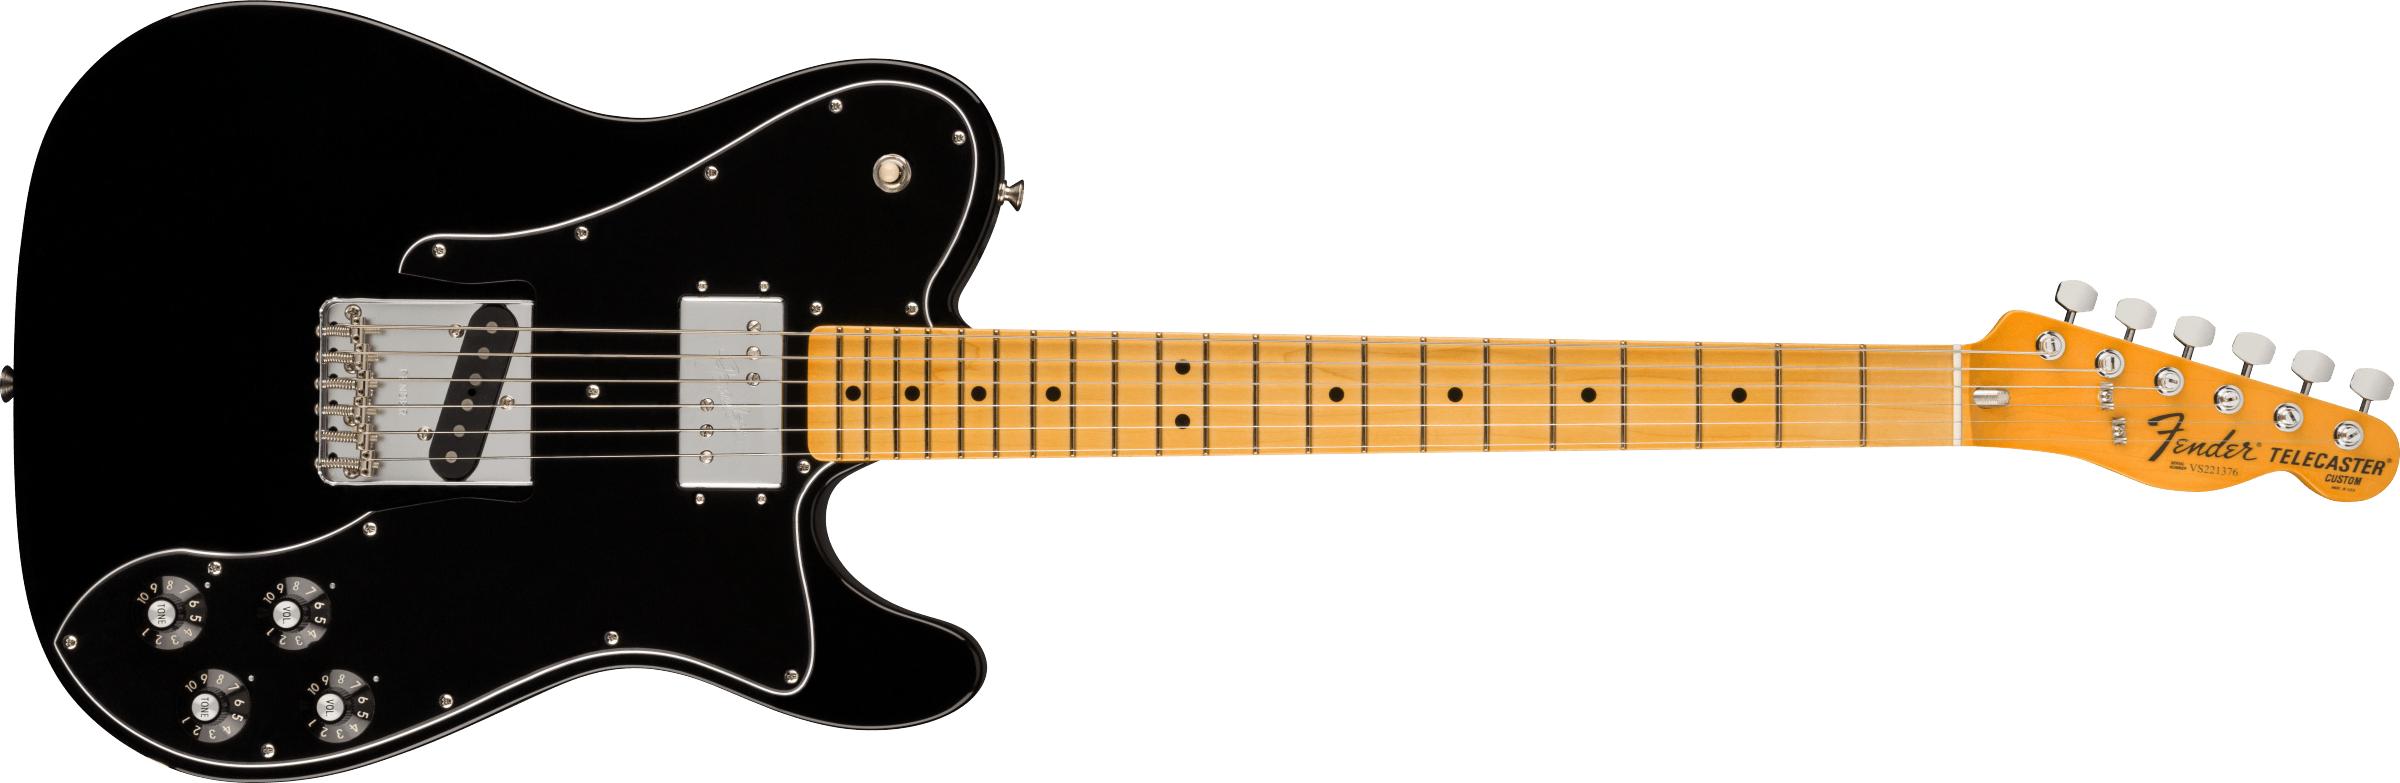 Fender American Vintage II 1977 Telecaster Custom Maple Fingerboard Black 0110442806